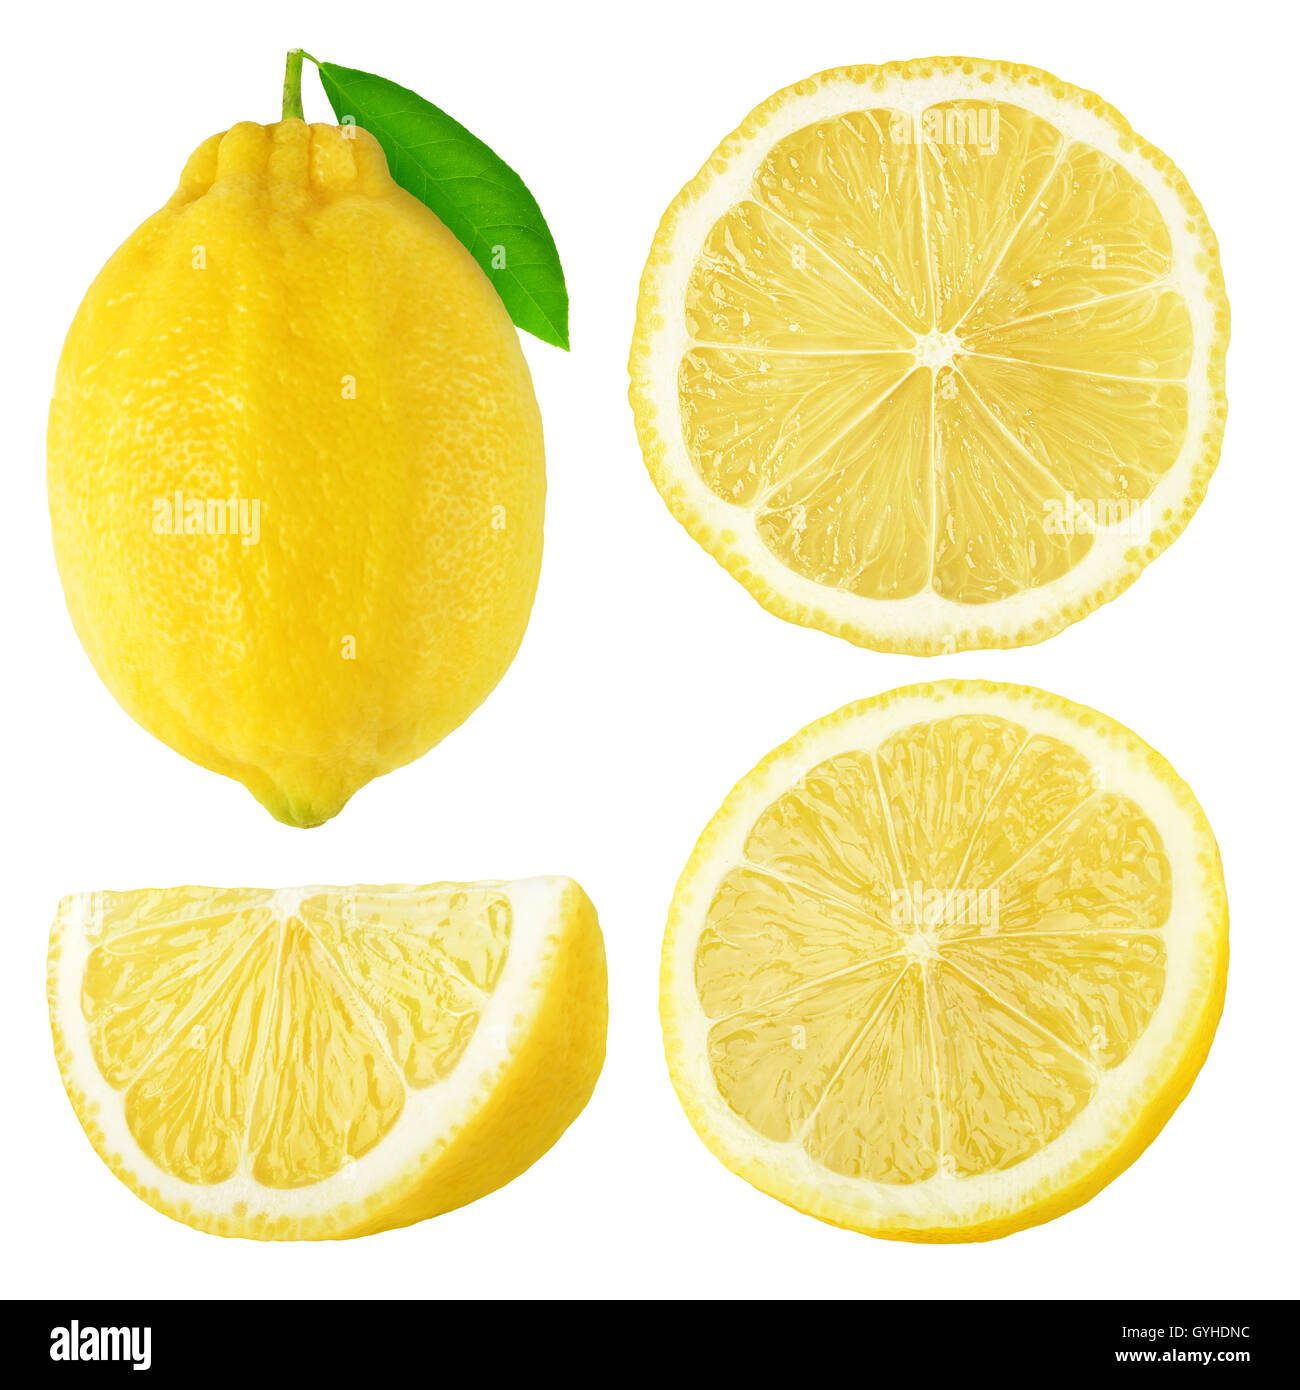 Citrons isolés. Ensemble et couper les fruits de citron isolé sur fond blanc avec clipping path Banque D'Images